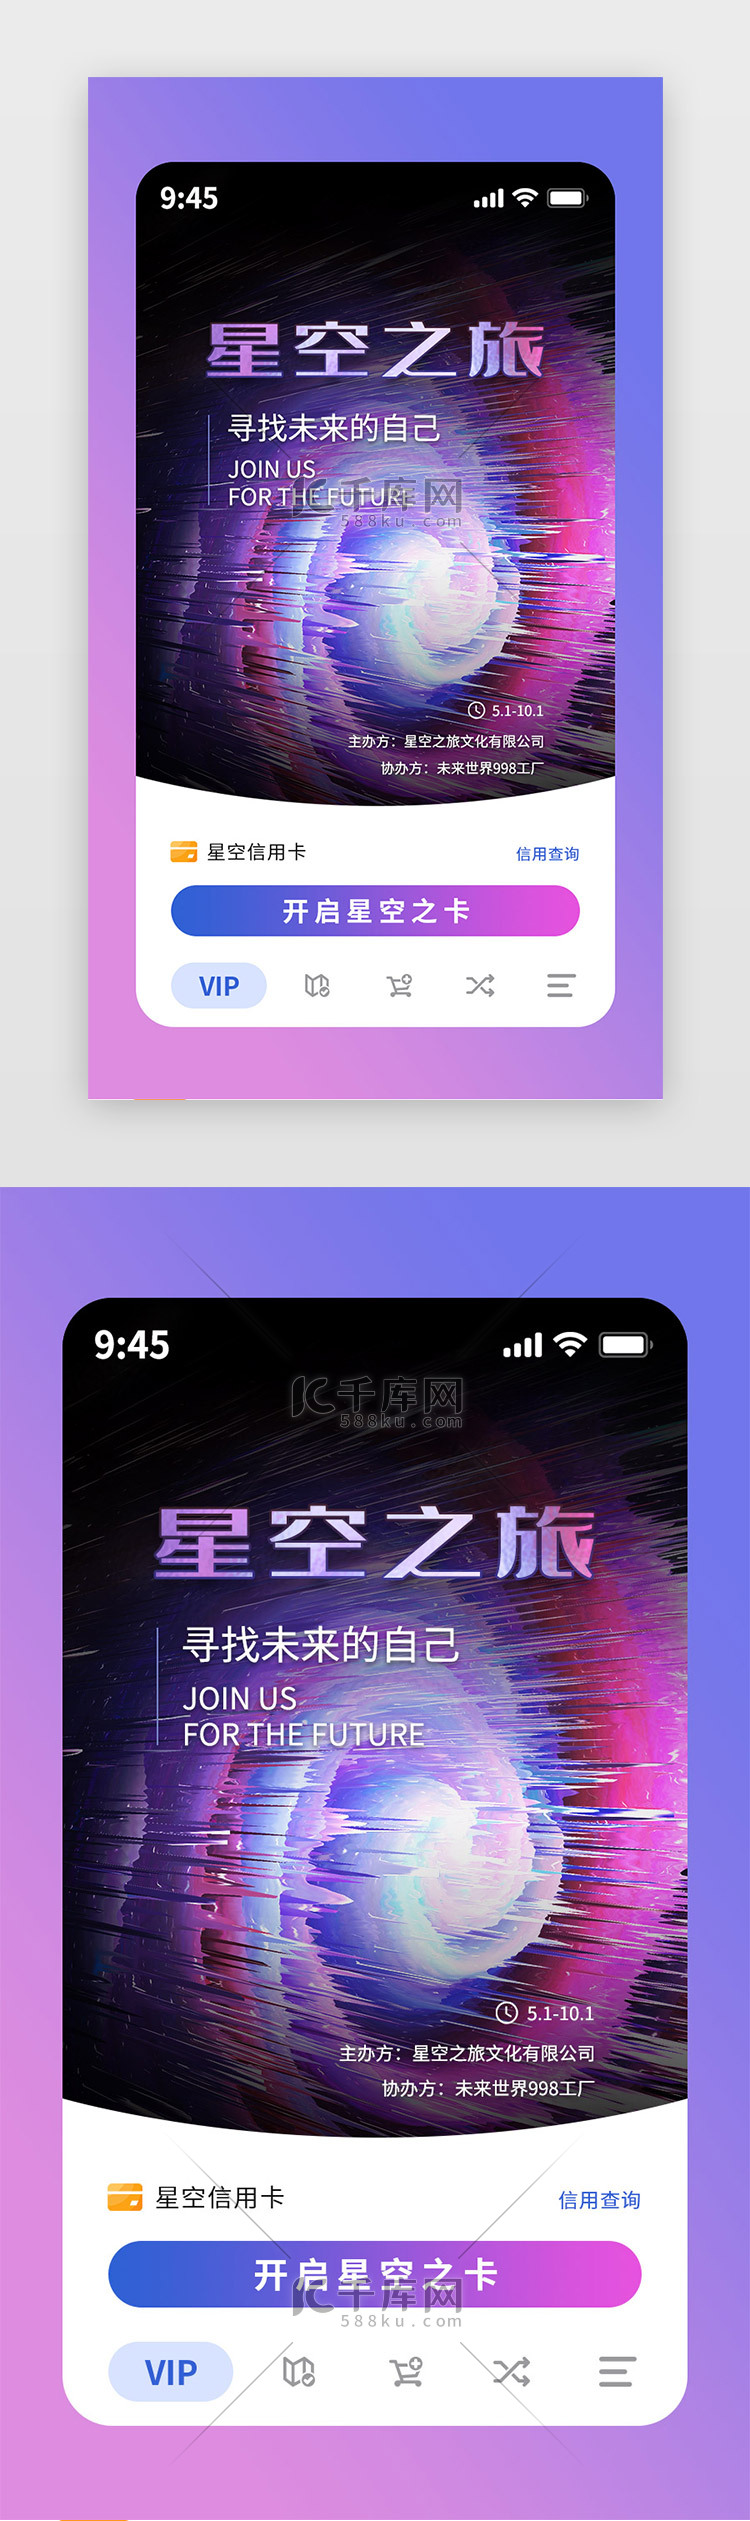 活动专题app主界面映射三维粉紫星空